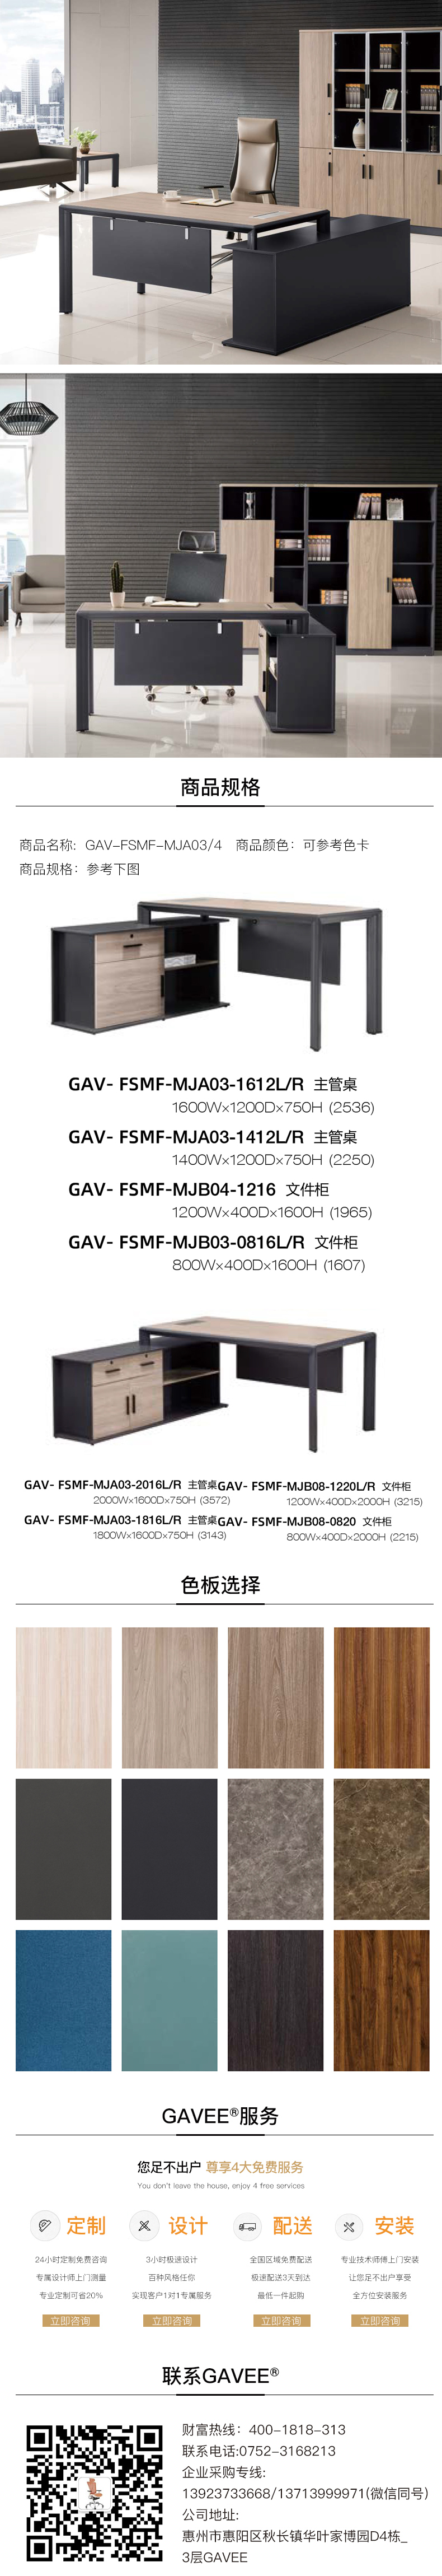 行政管理系統GAV-FSMF-MJA03-4.jpg